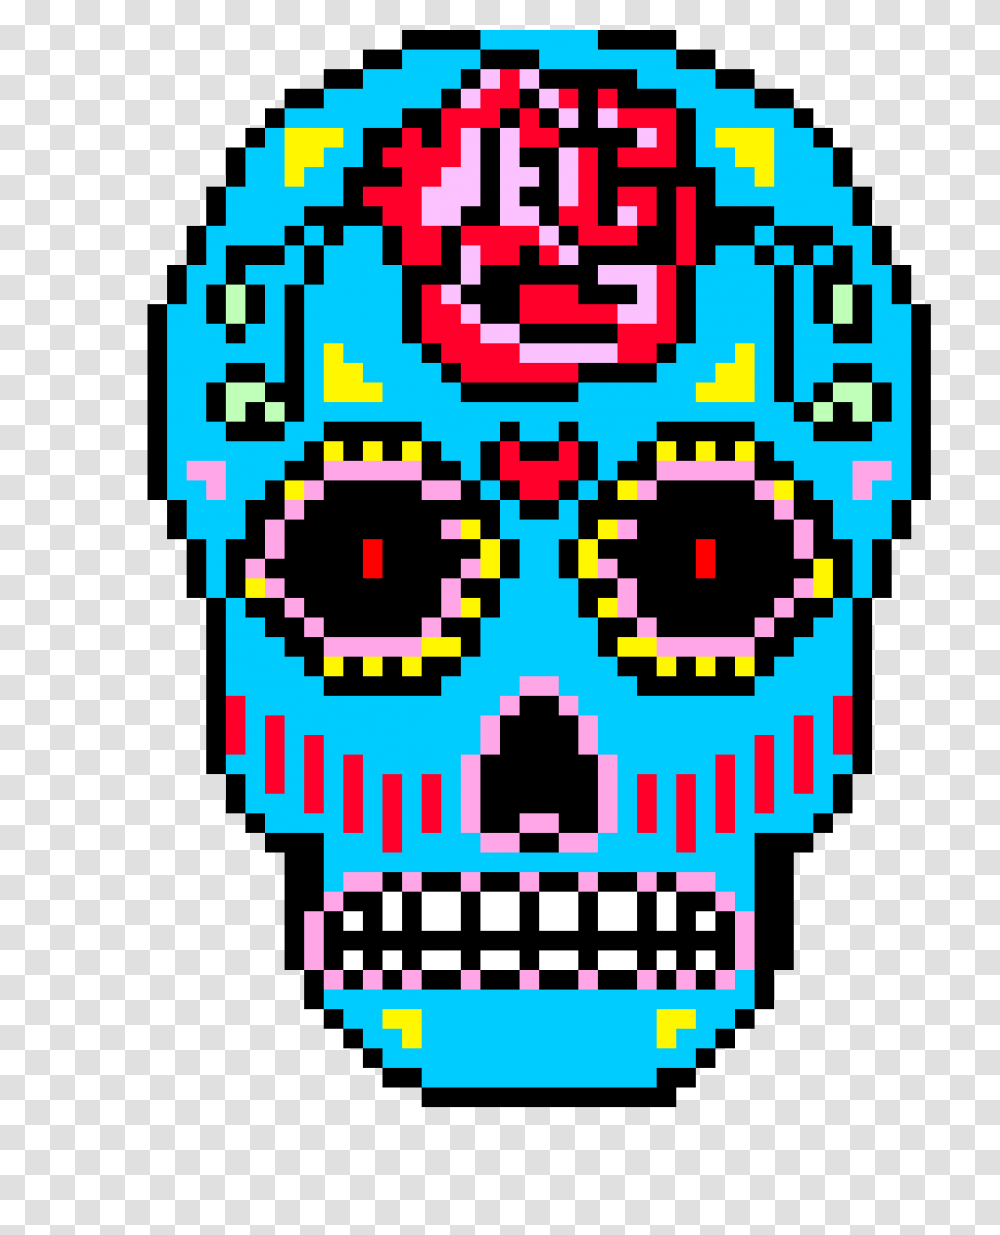 Sugar Skull Pixel Art Maker, Pac Man, QR Code Transparent Png